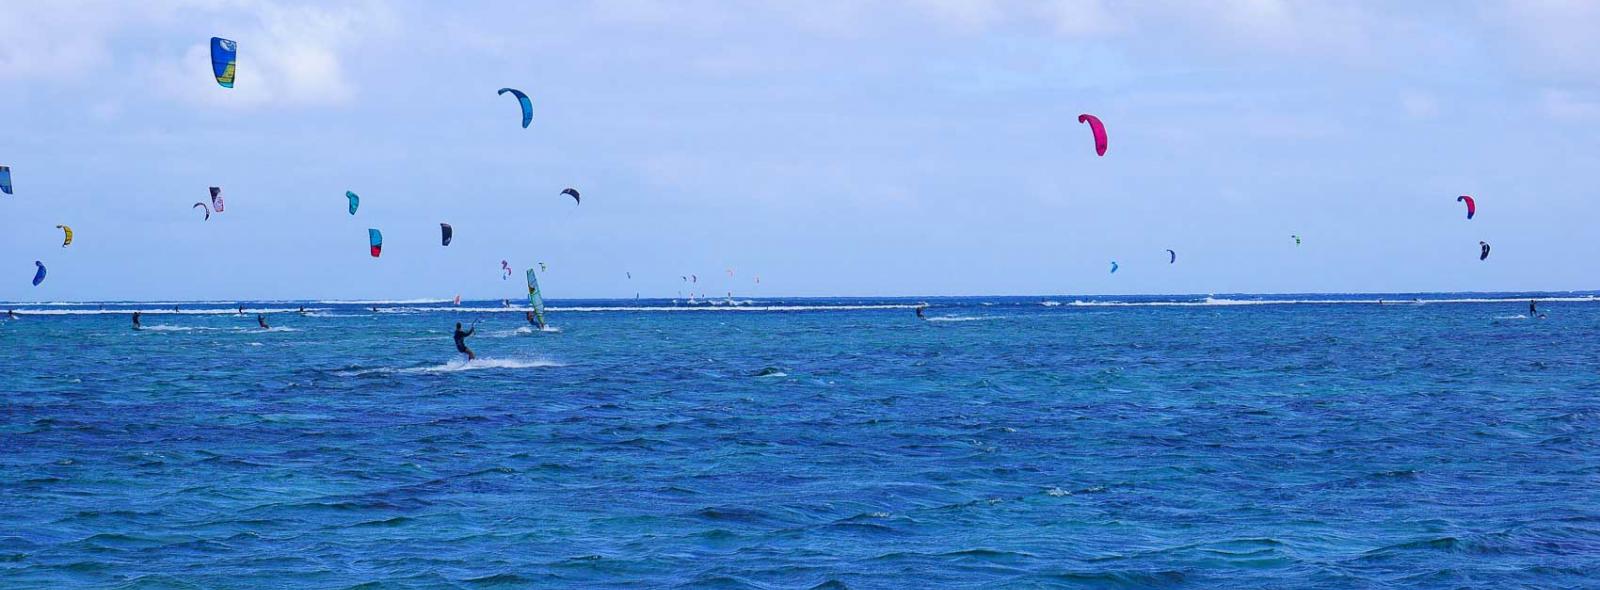 Plusieurs ailes de kitesurf en l'air sur le spot du Morne à l'ile Maurice